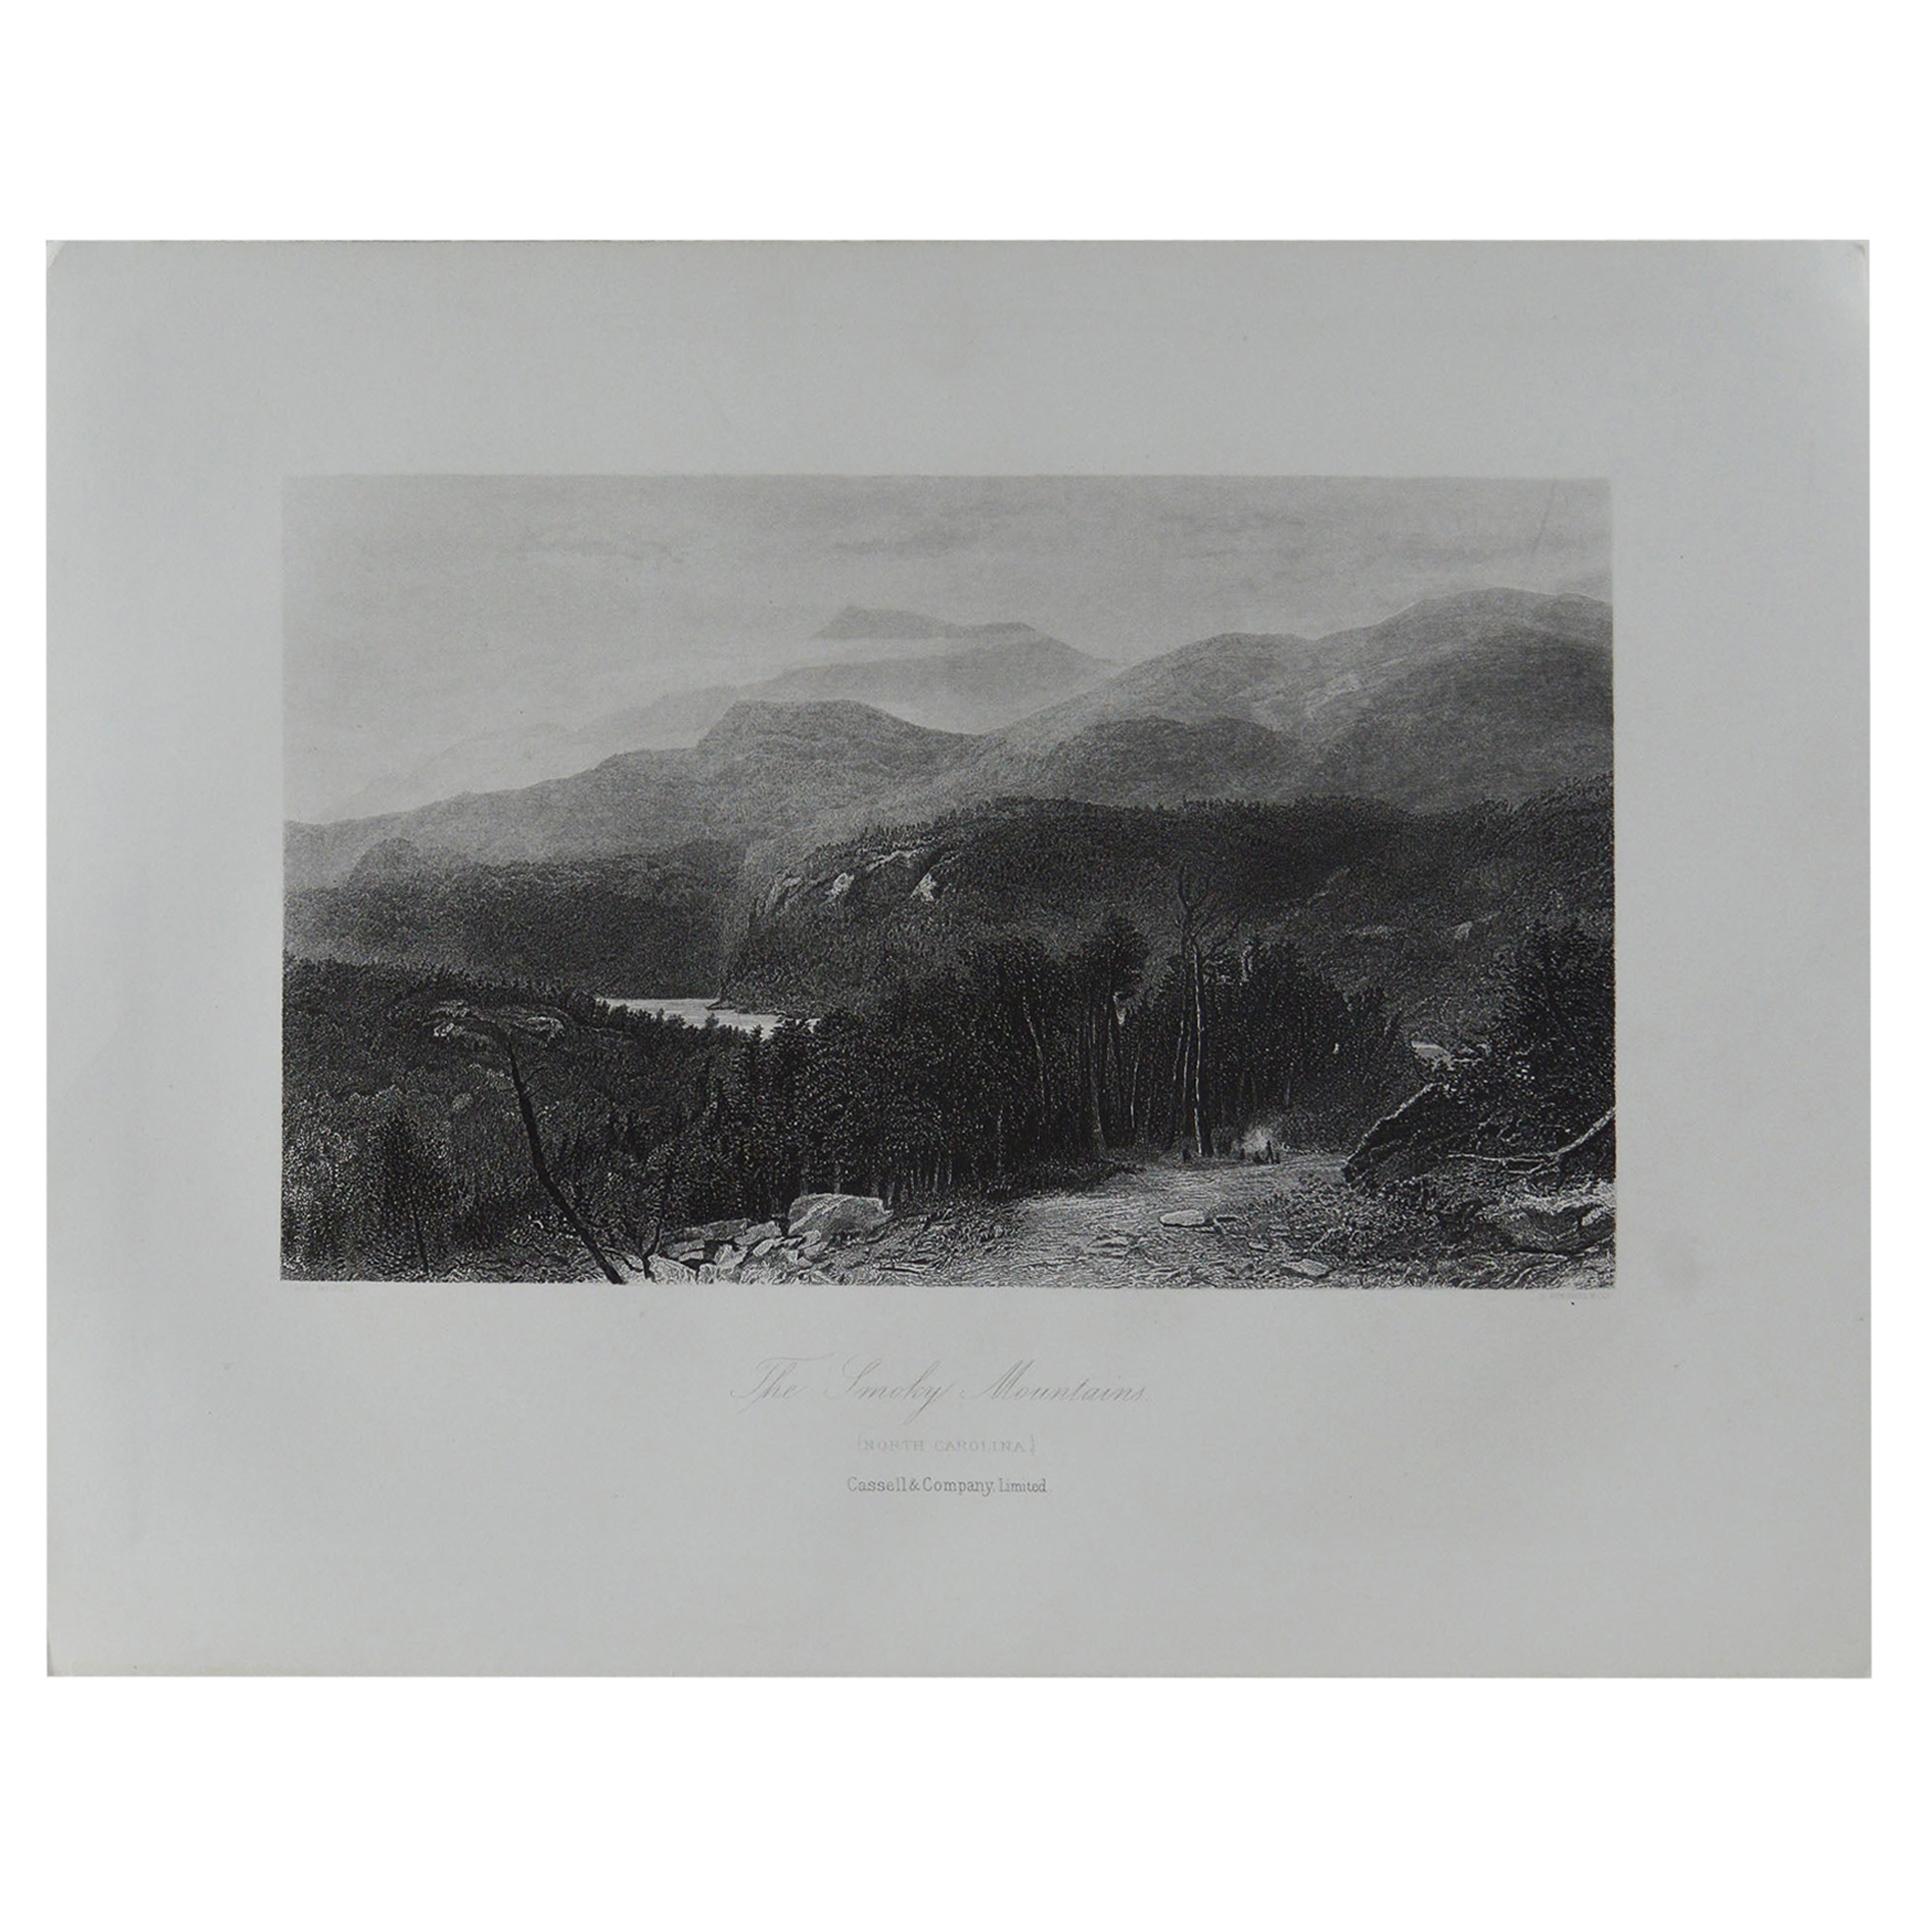 Original Antique Print of The Smoky Mountains, North Carolina, circa 1870